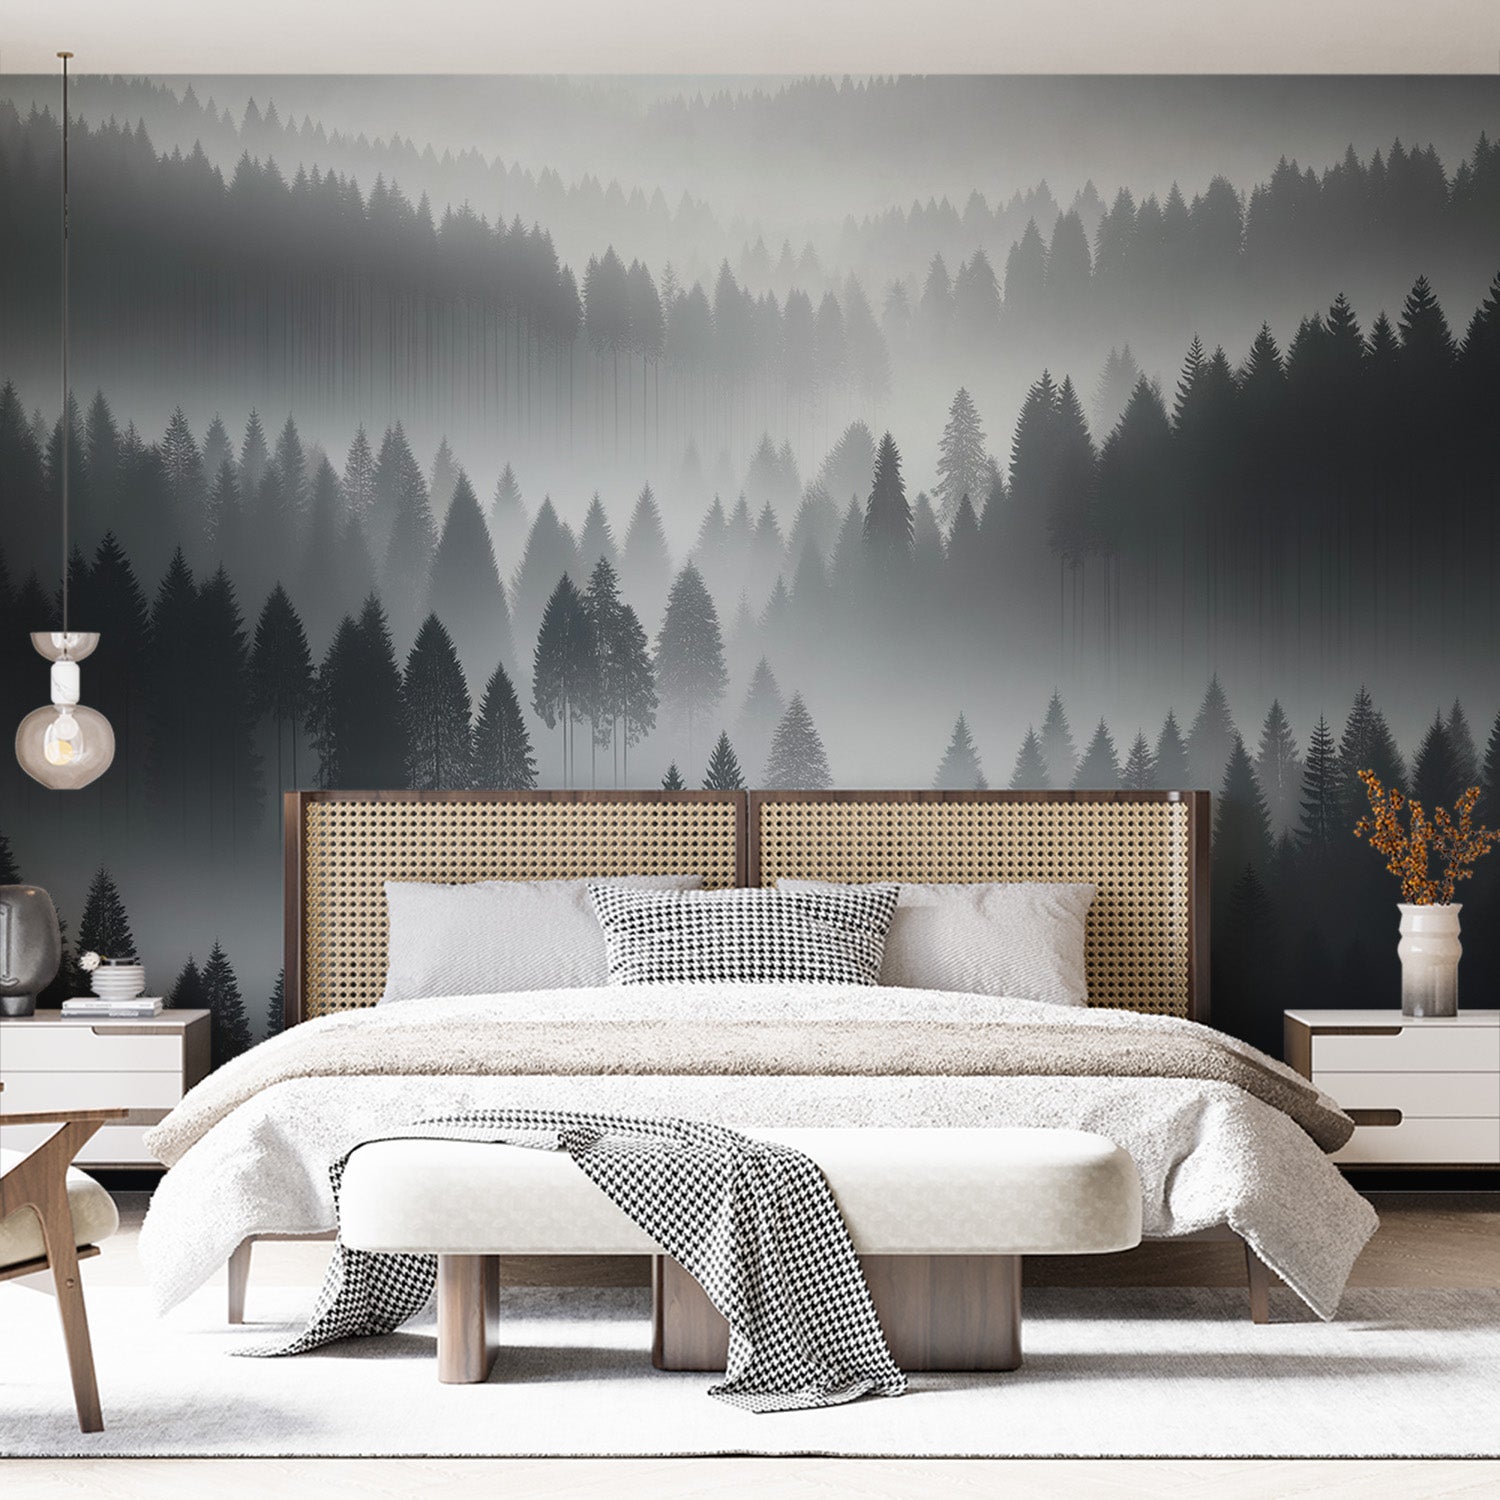  Papier peint forêt Brume mystérieuse parmi des conifères en nuances de gris